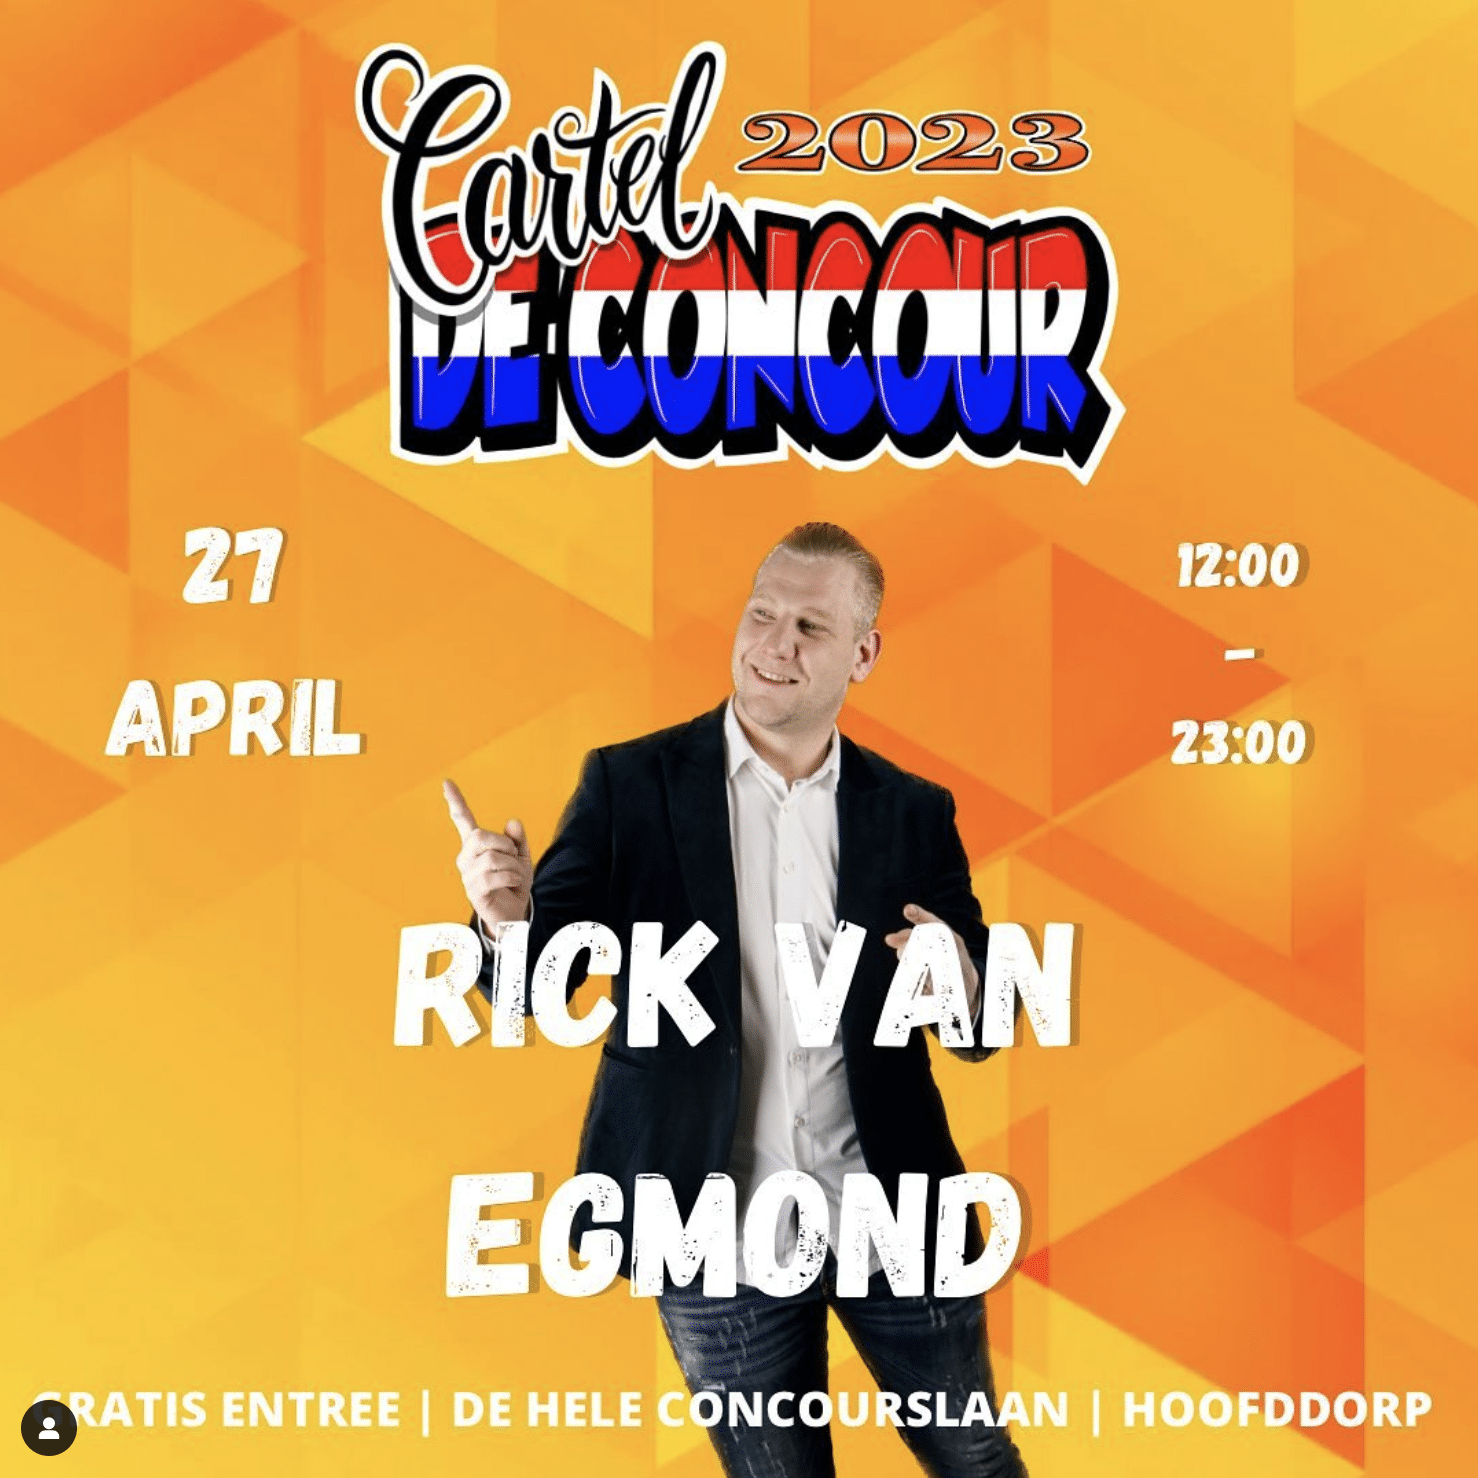 Rick van Egmond